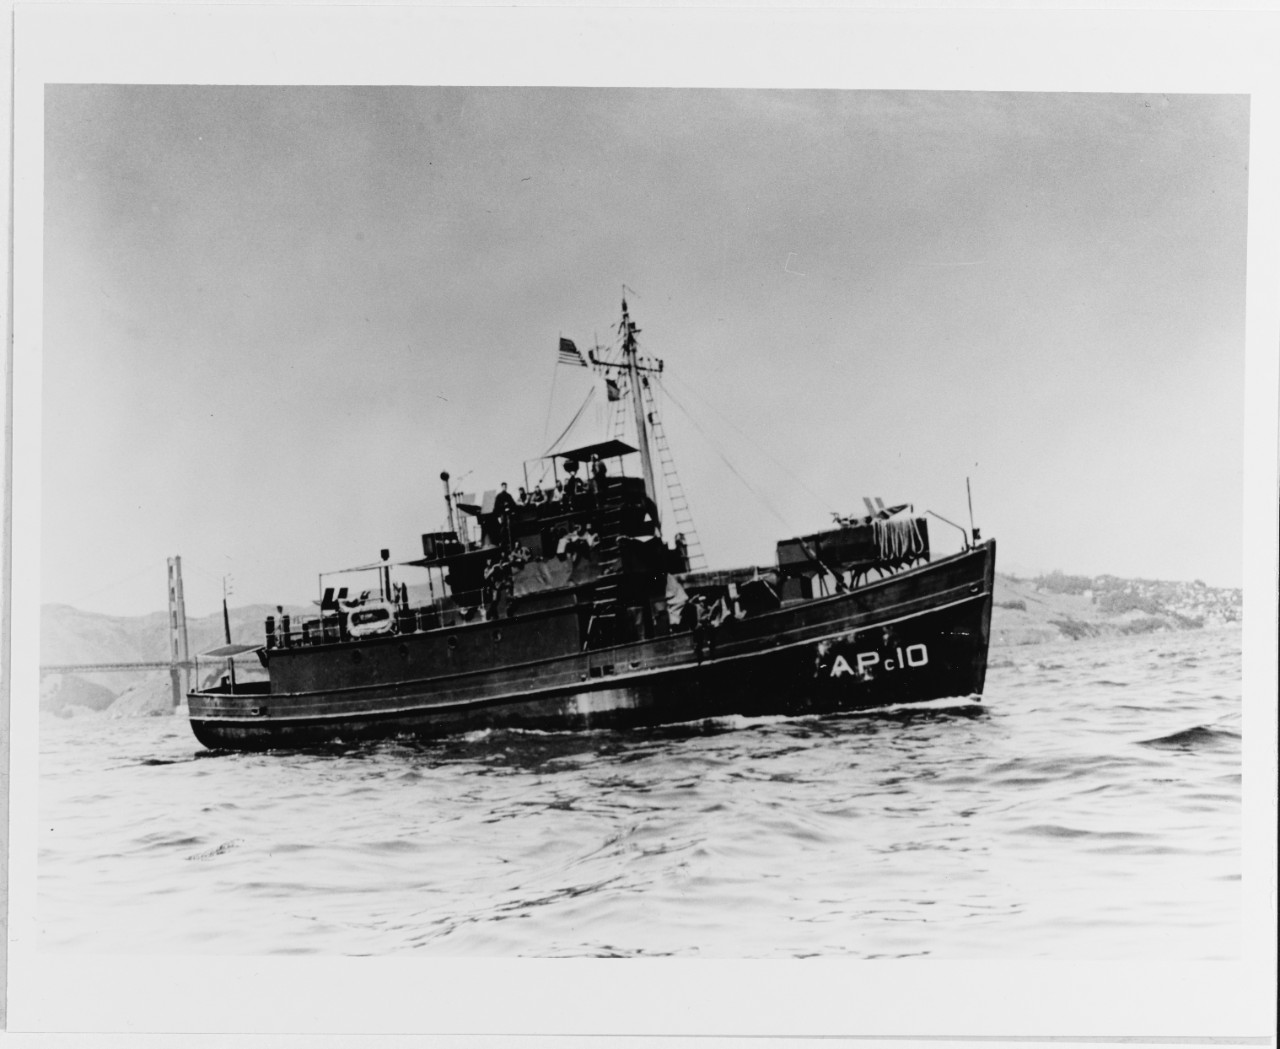 USS APc-10